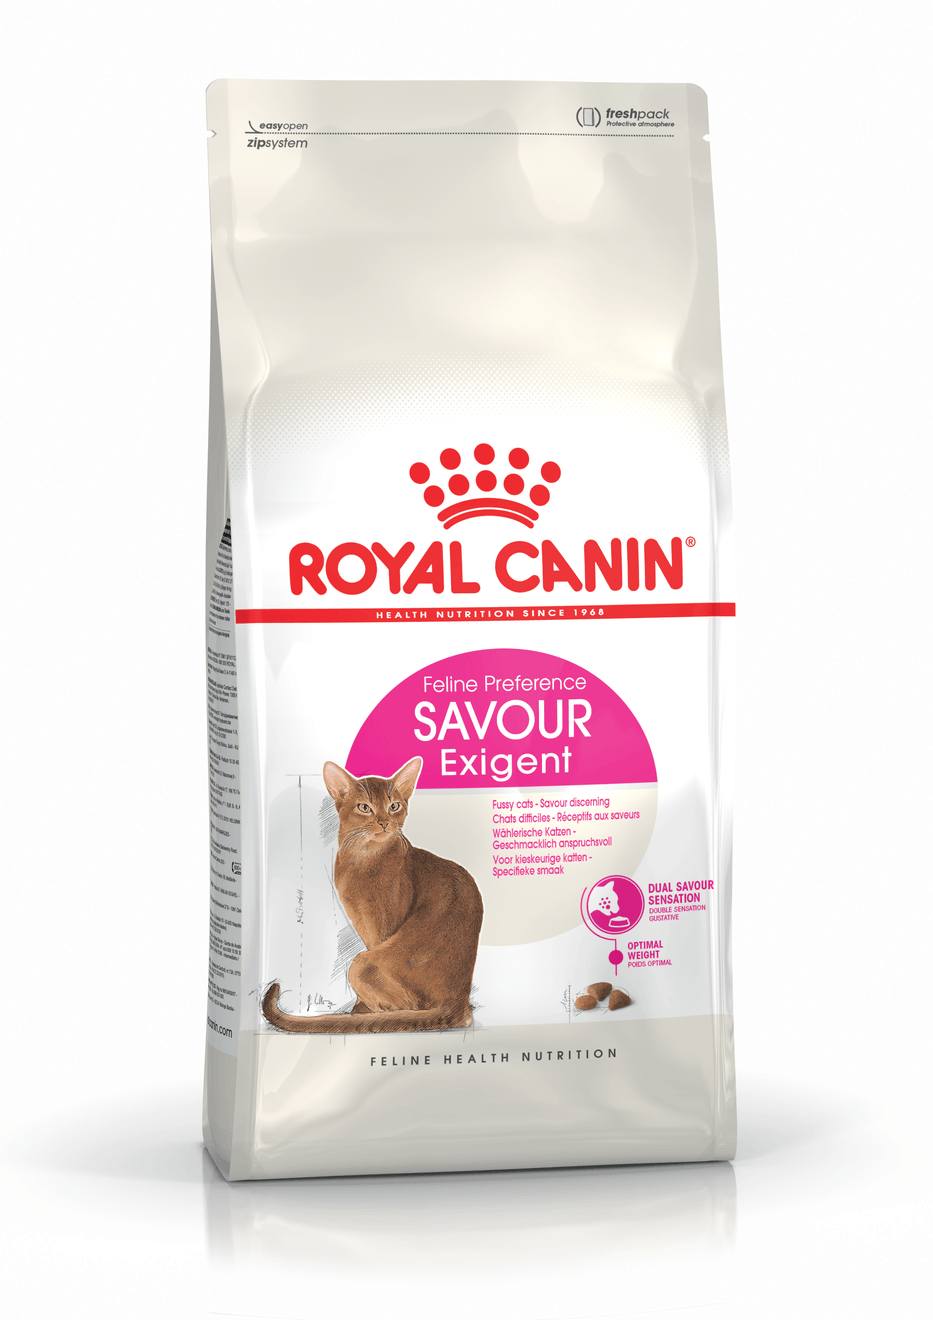 【Royal Canin】法國皇家貓乾糧 - 成貓口感豐富挑嘴配方 - Pet Pet Plaza